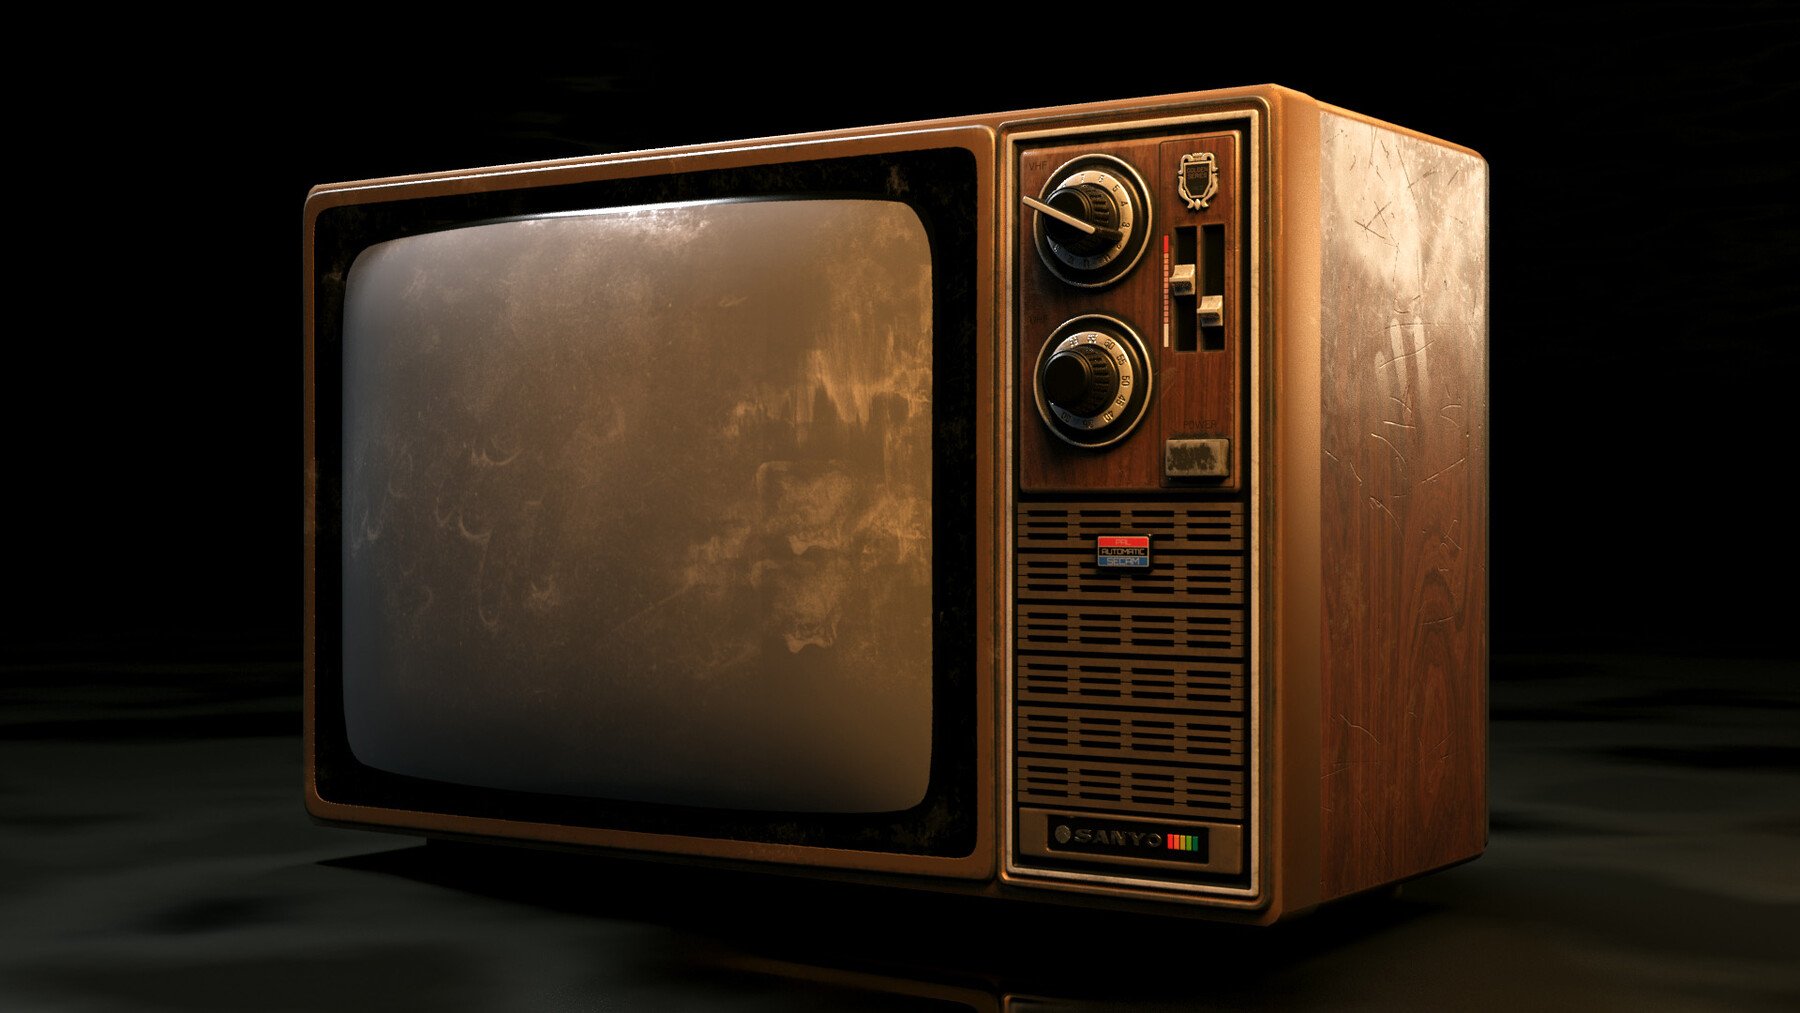 Old tv shows. Телевизор кроссовер. Old TV 3d model. Old TV. 3d render old TV.